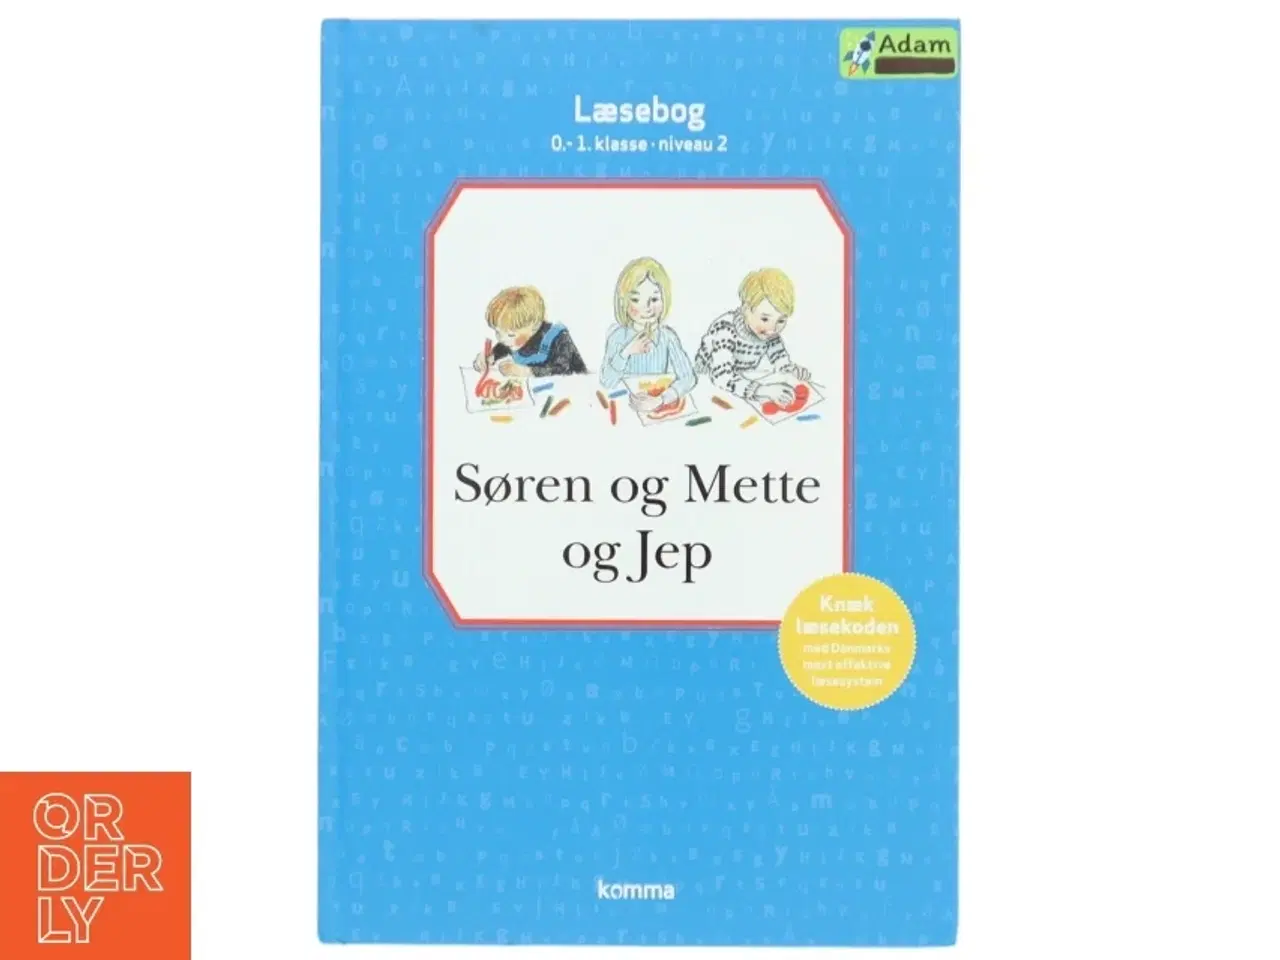 Billede 1 - Søren og Mette og Jep : læsebog, 0.-1. klasse - niveau 2 (Ill. Svend Otto S. og Lone Kunz) (Bog)